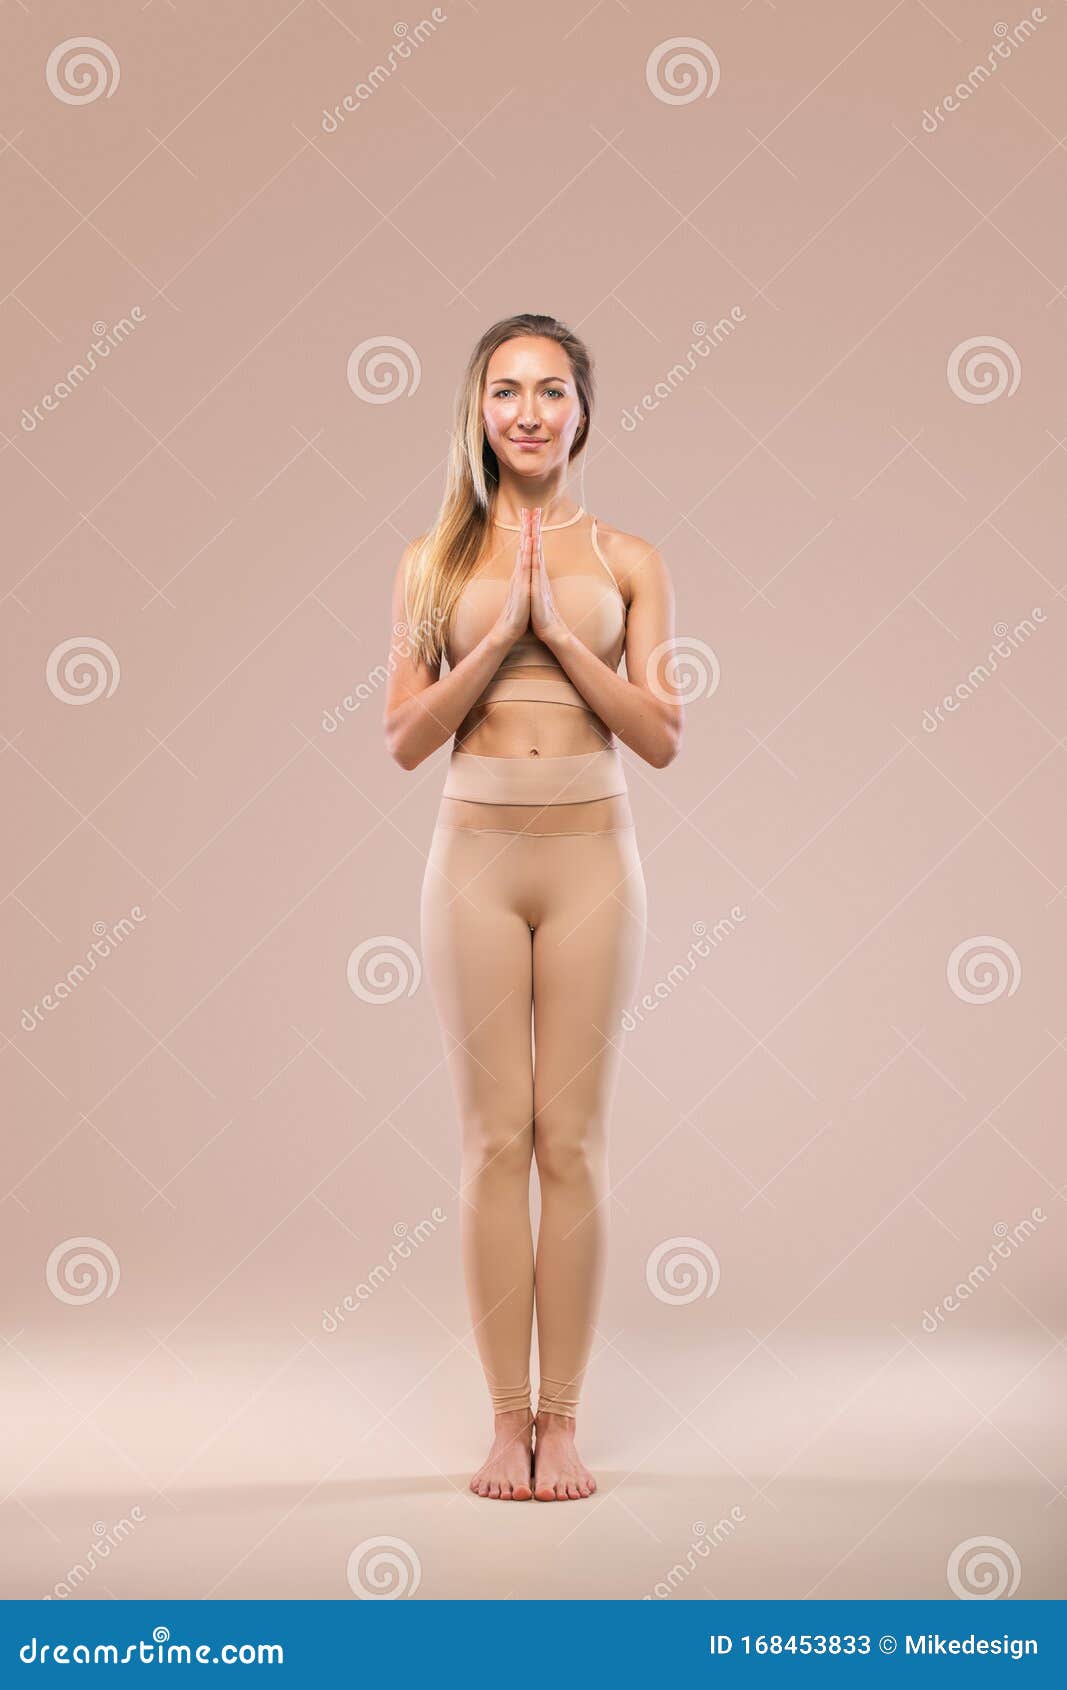 Nude Sporty Women